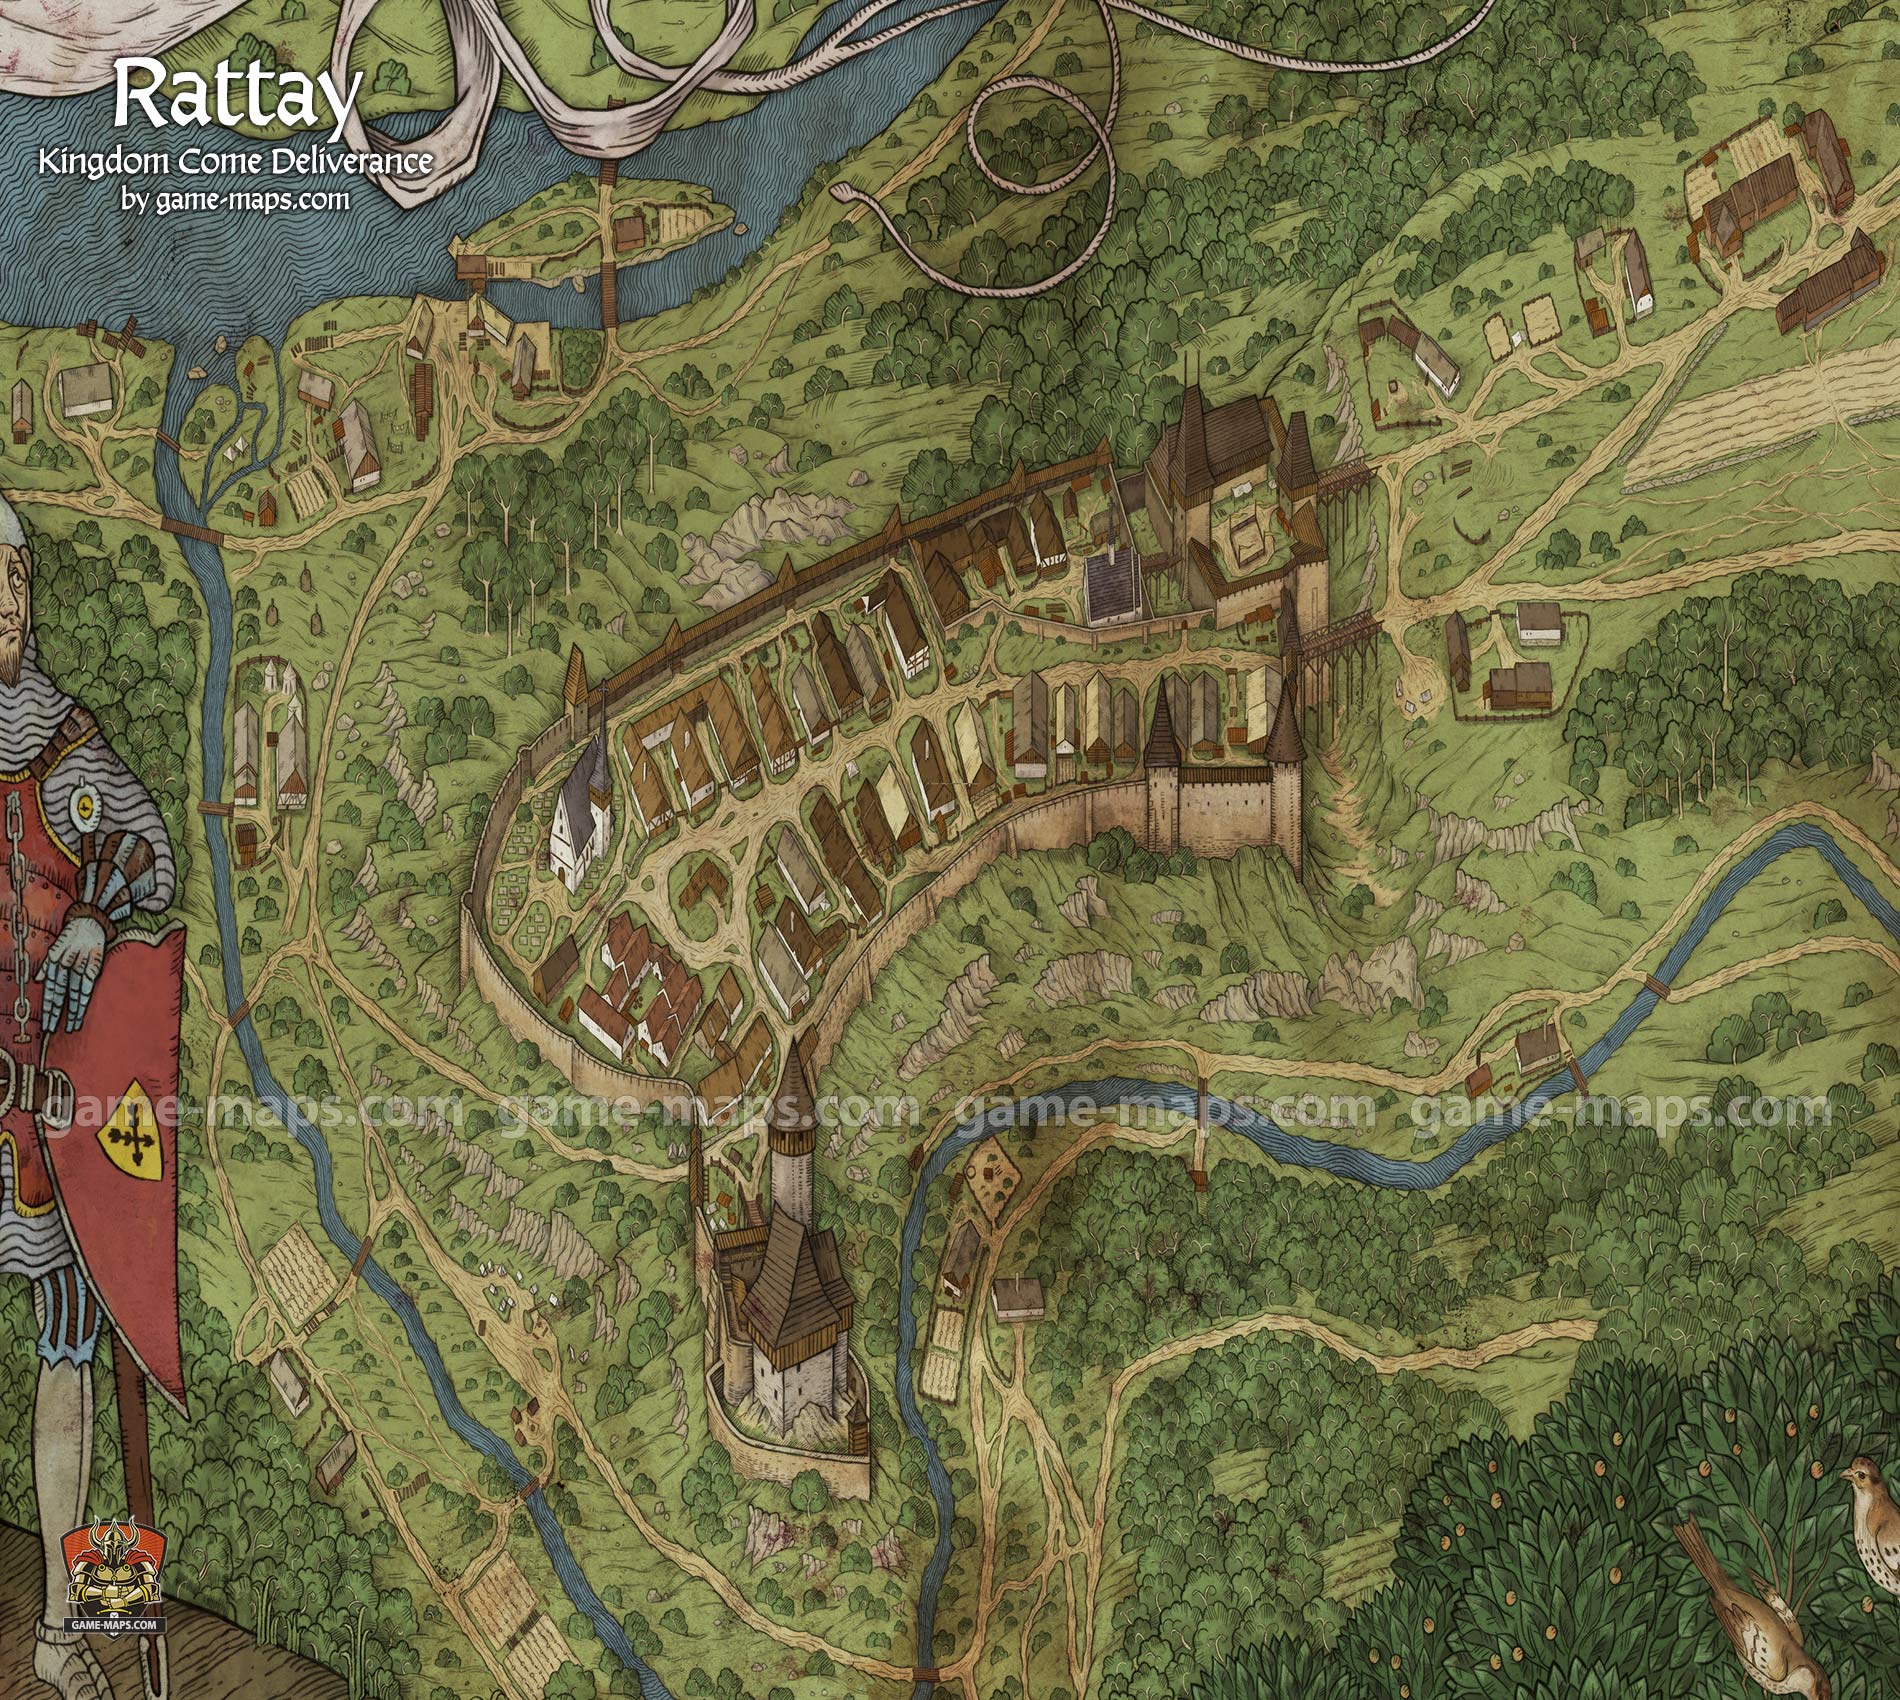 Rattay Map for Kingdom Come Deliverance